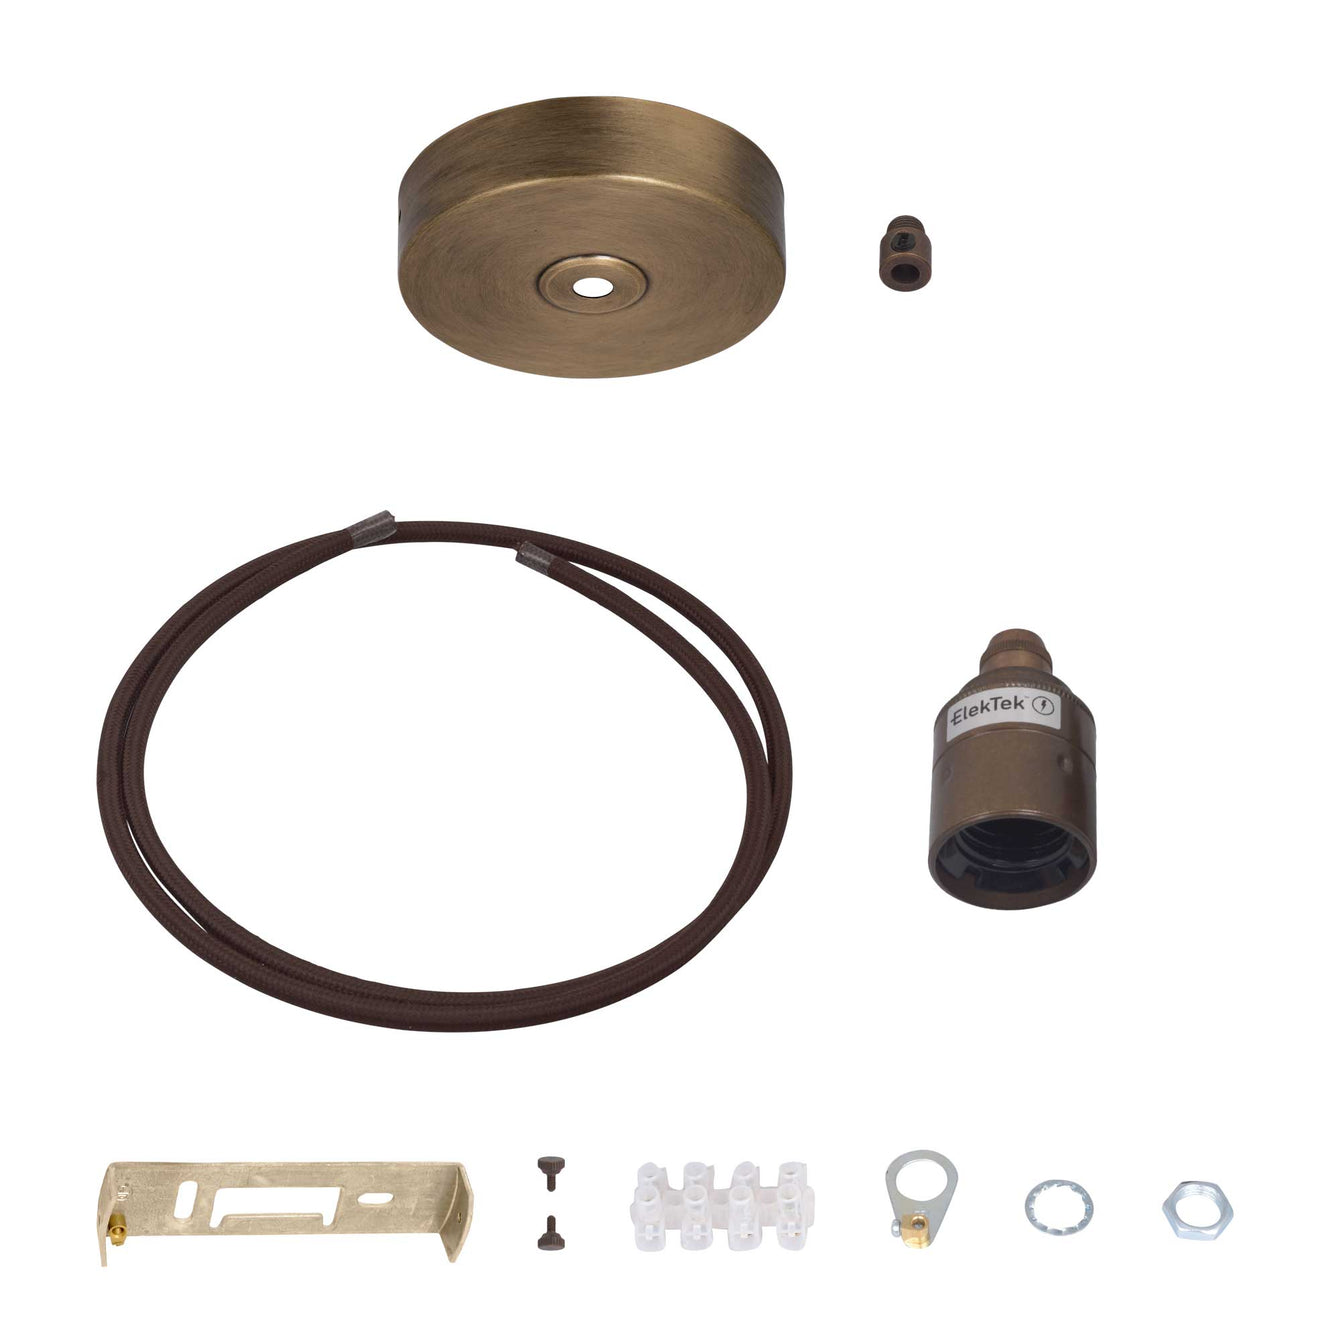 ElekTek Premium Pendant Light Kit DIY 100mm Flat Top Ceiling Rose, Round Flex and Lamp Holder E27 Plain Cord Grip - Buy It Better Nickel